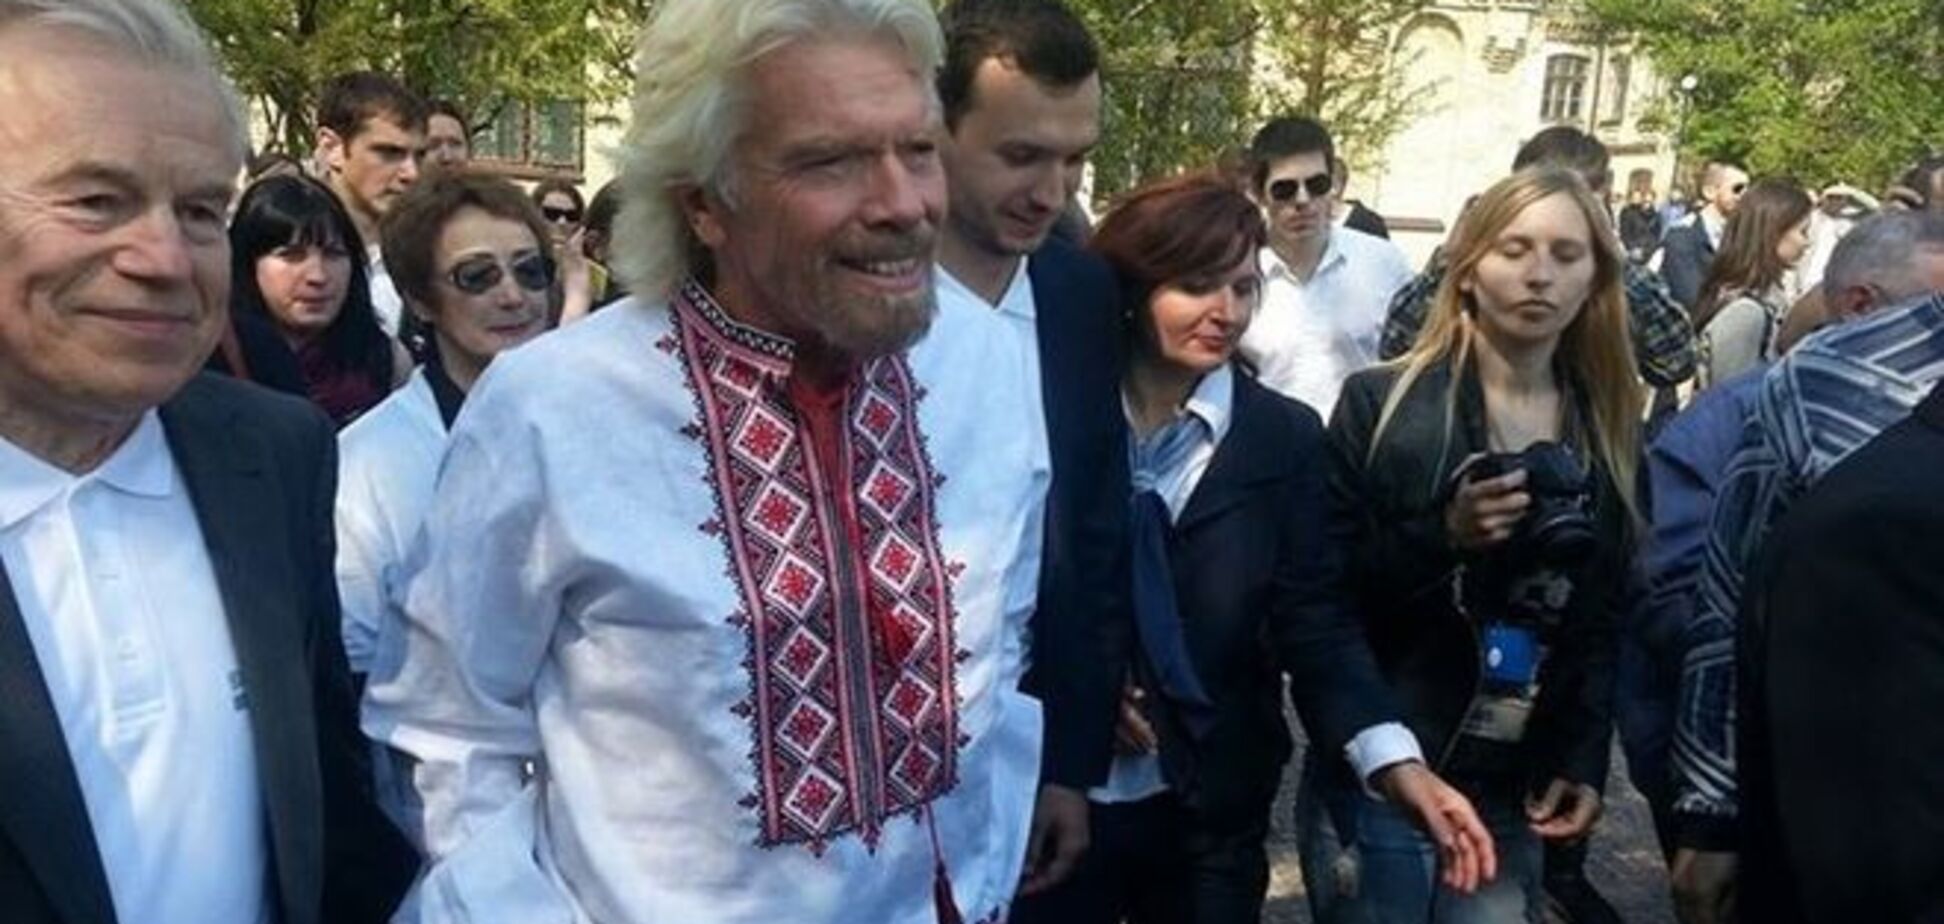 Миллиардер Ричард Брэнсон гулял по Киеву в вышиванке: фотофакт